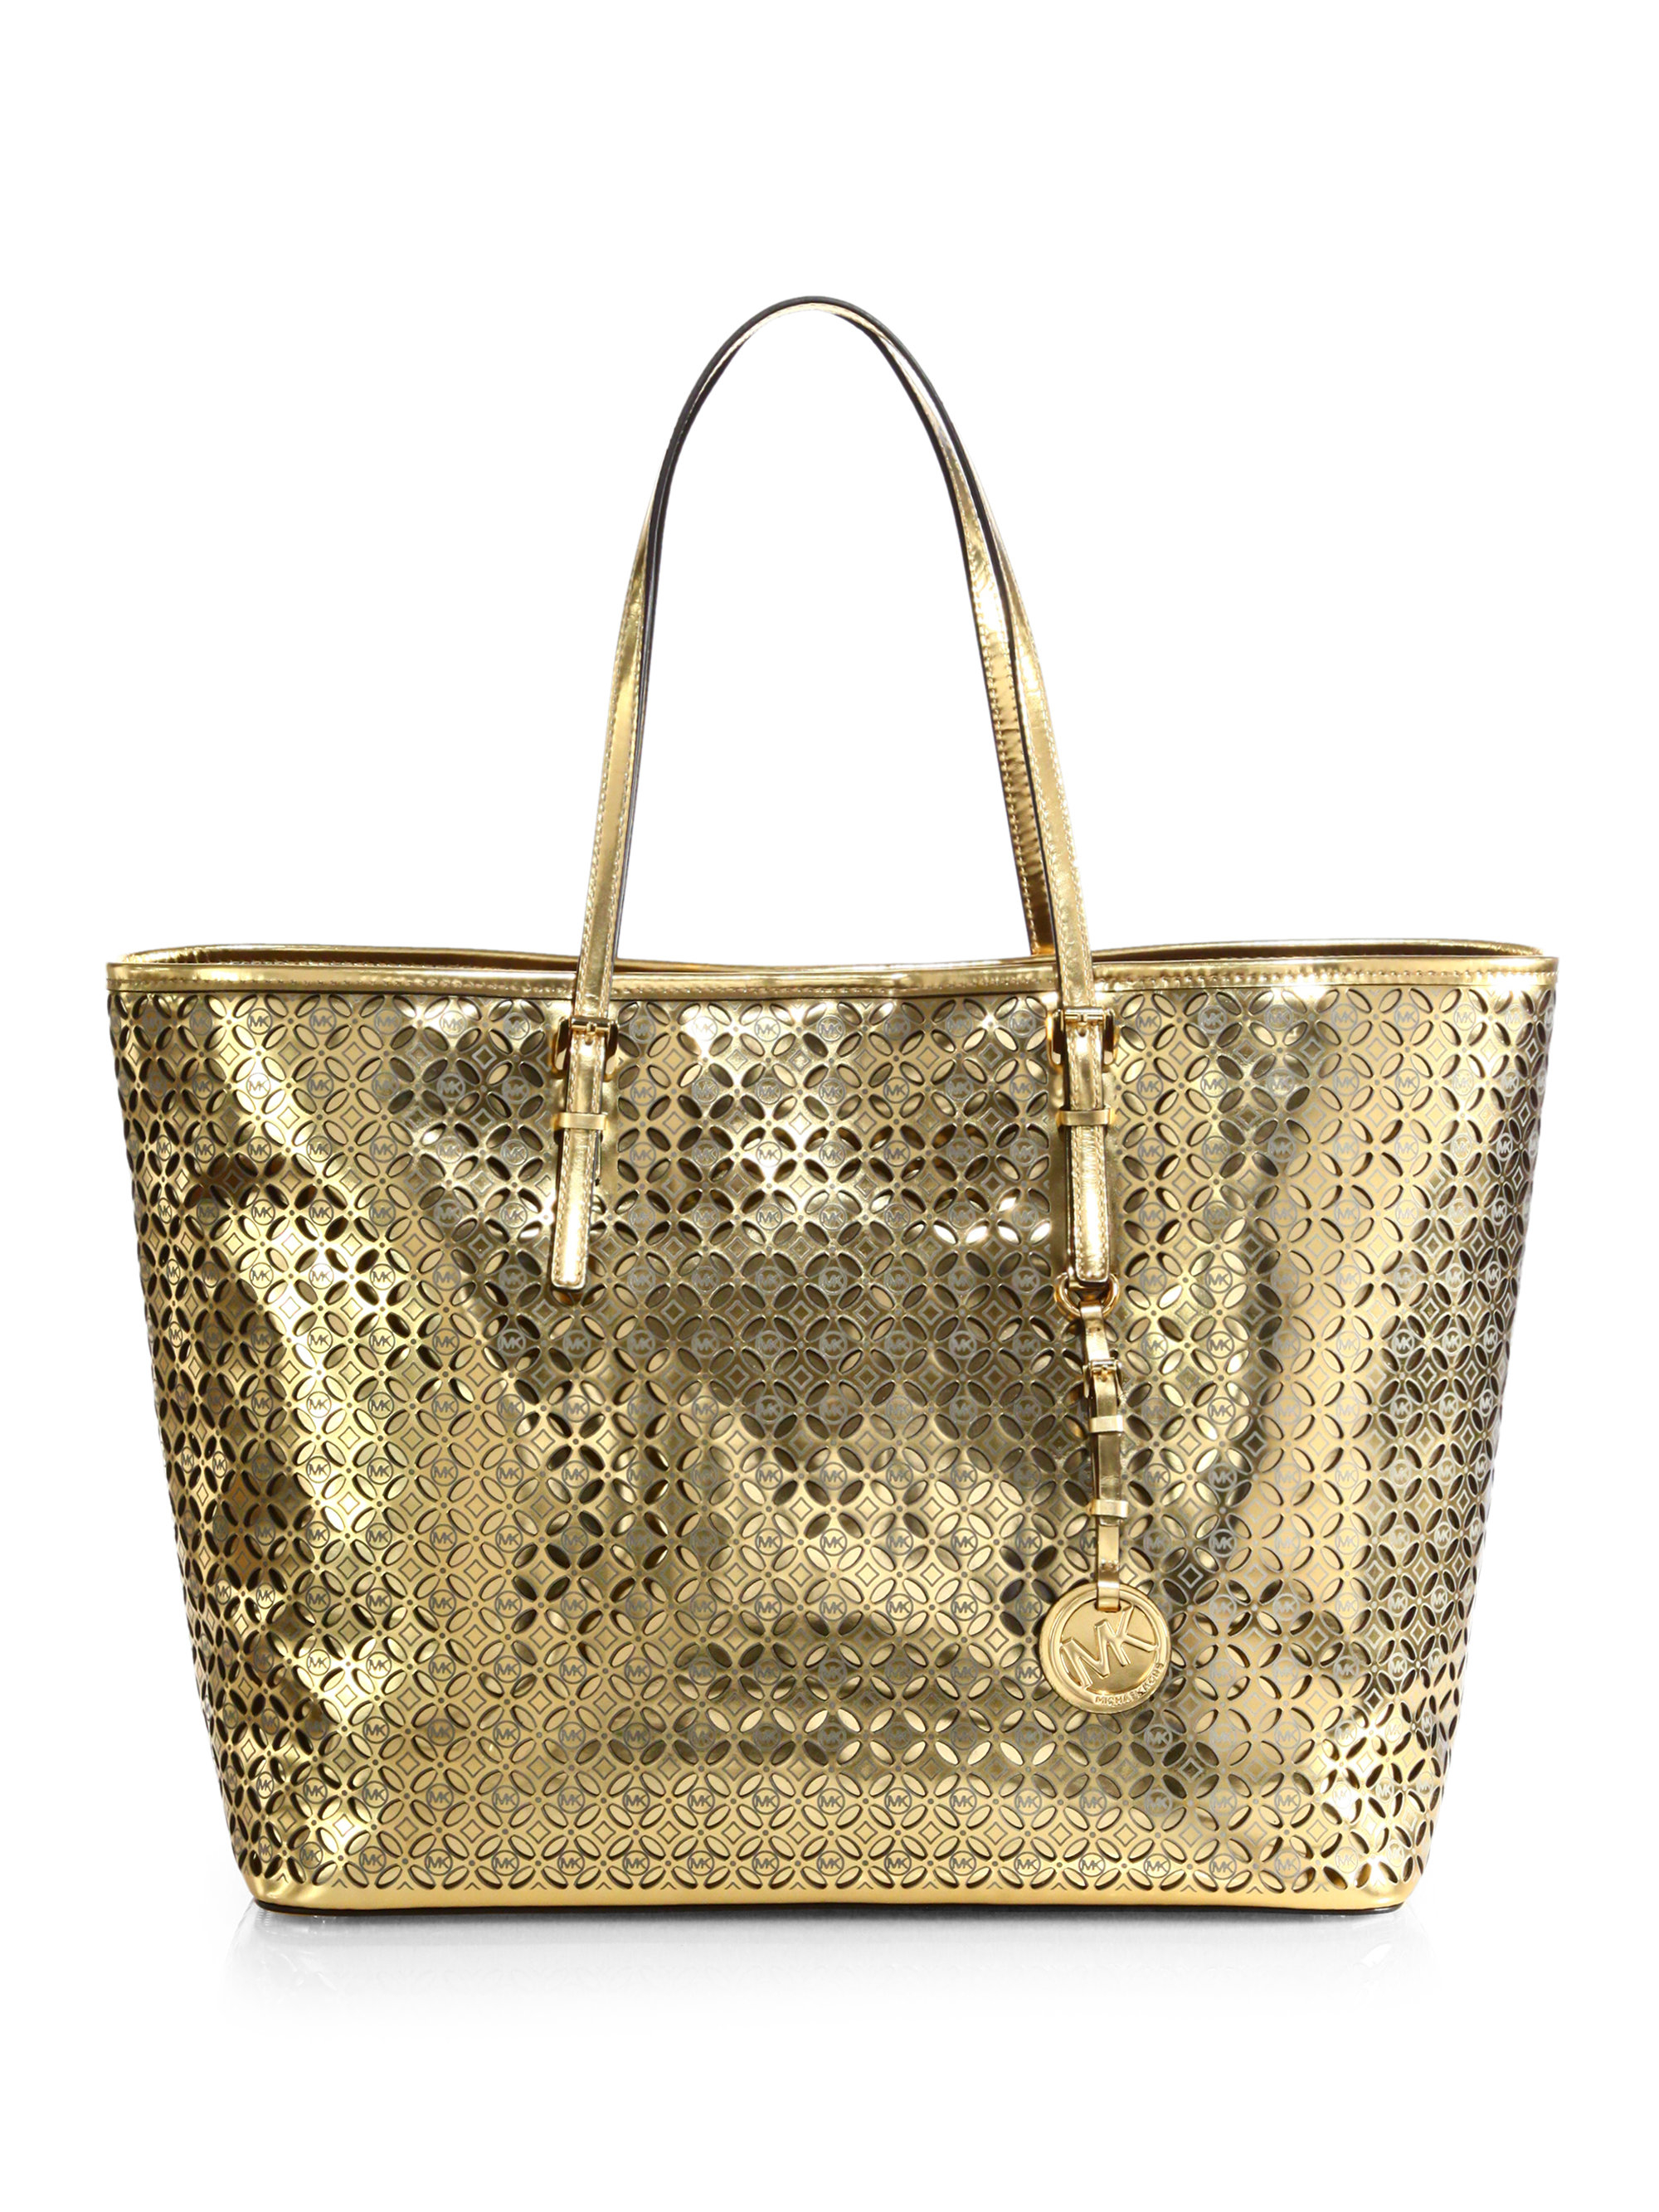 MK handbags gold